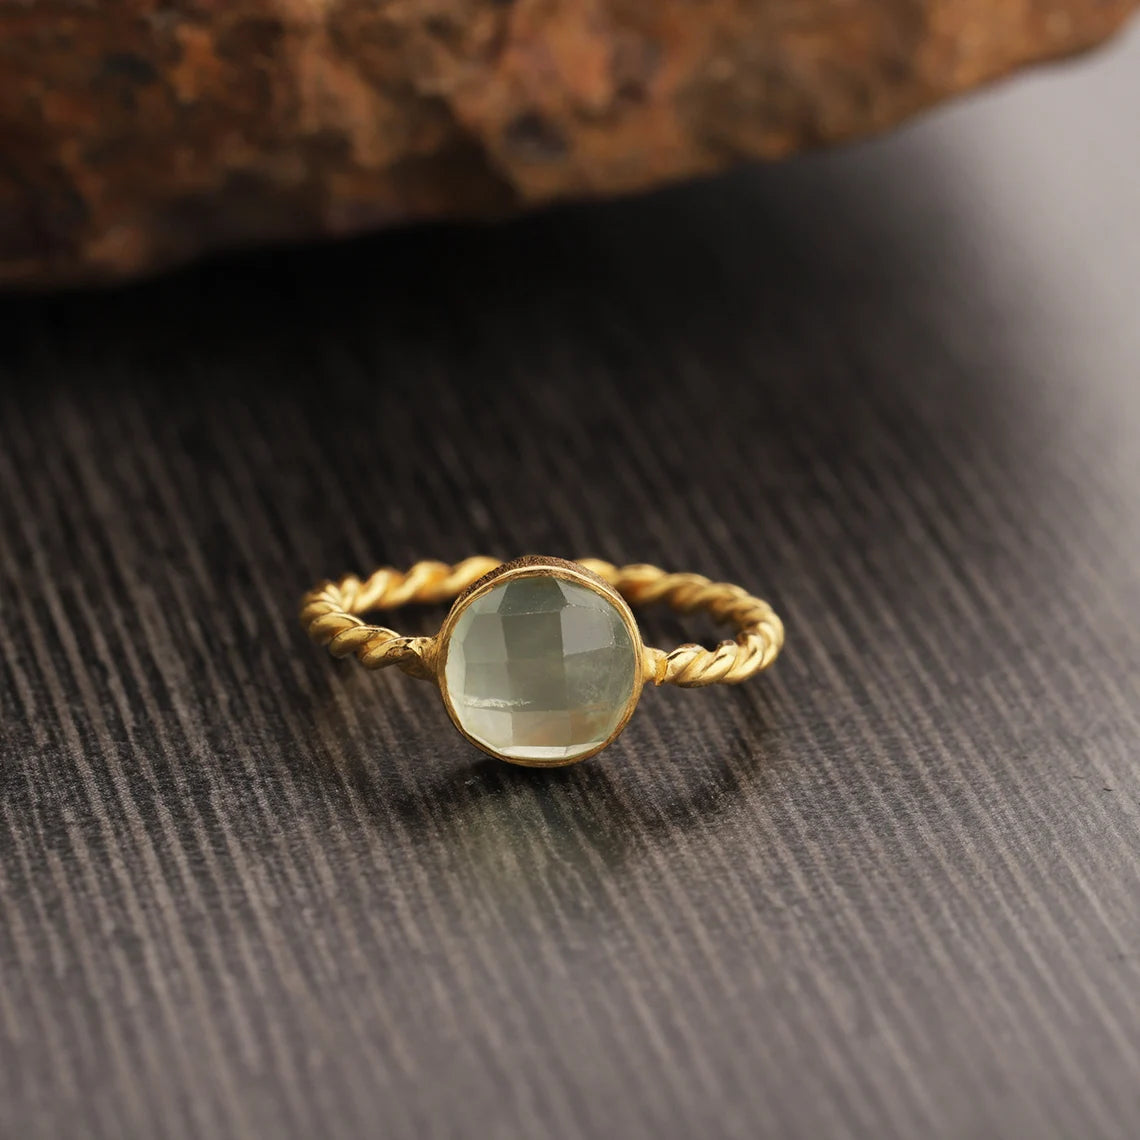 Natural Prehnite Gemstone Ring, Sterling Silver Yellow Gold Ring, Artisan Gift Ring, Stacking Ring ,Natural Prehnite Twisted Band Ring